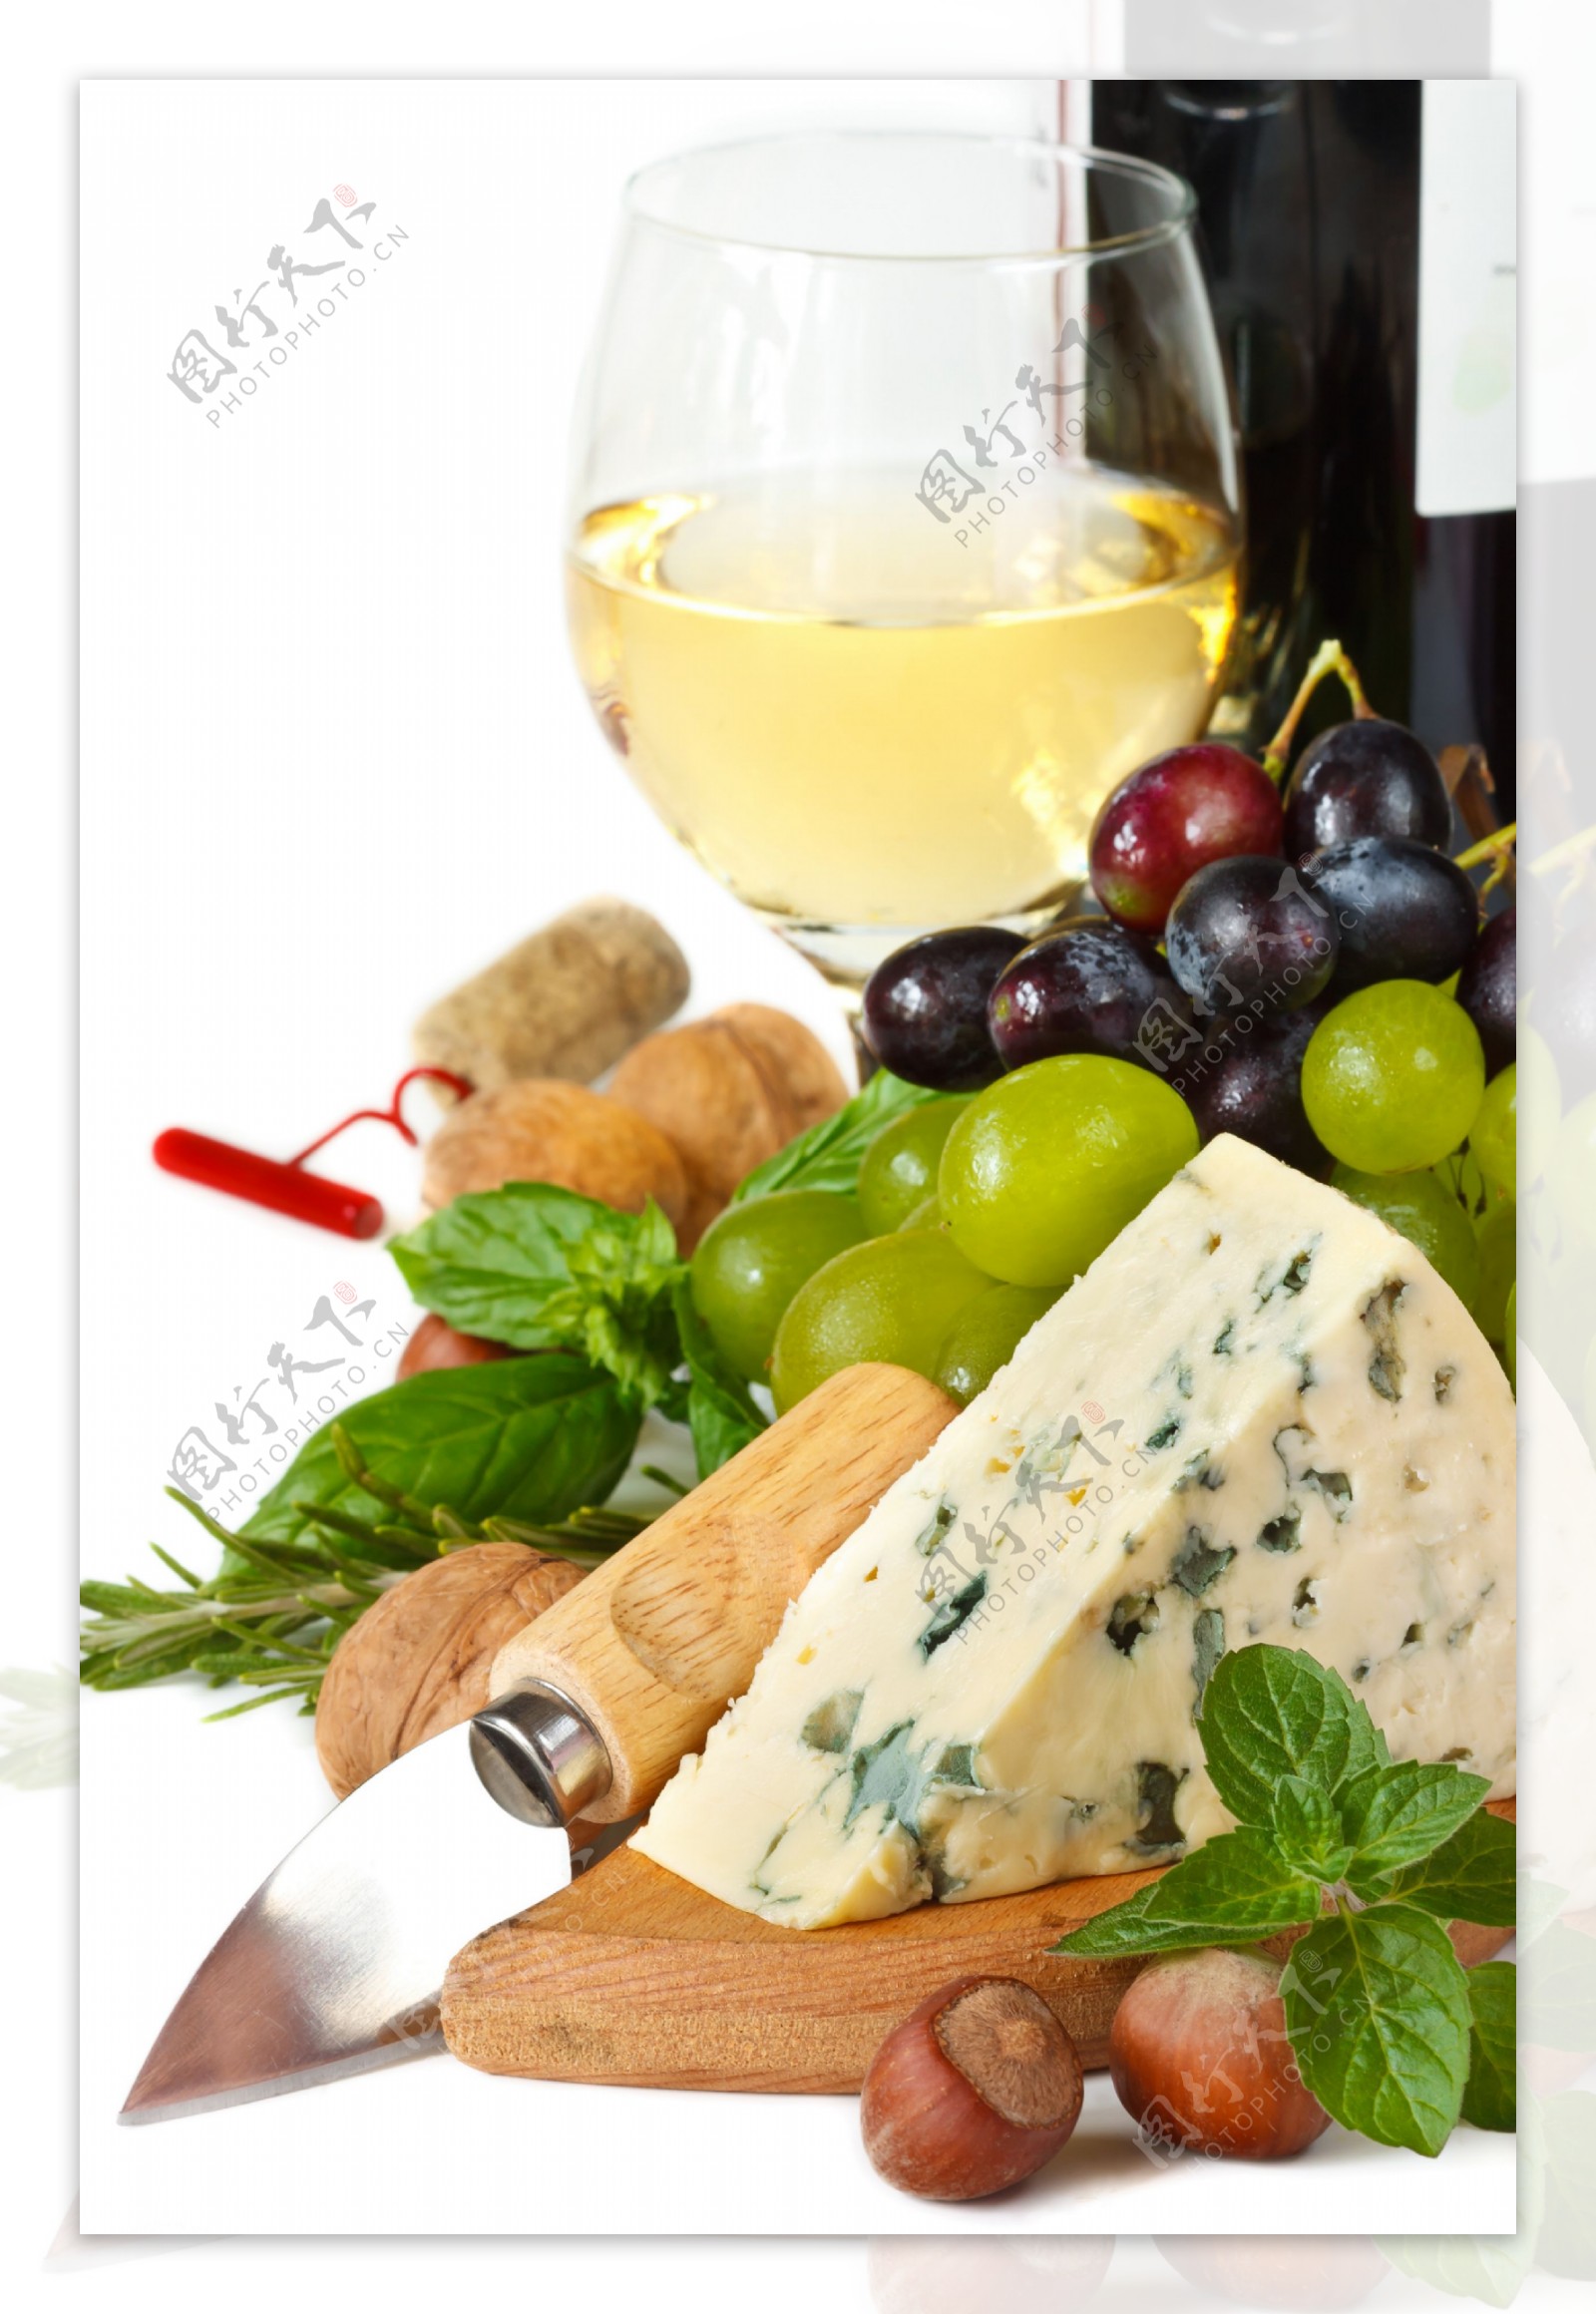 葡萄酒与奶酪